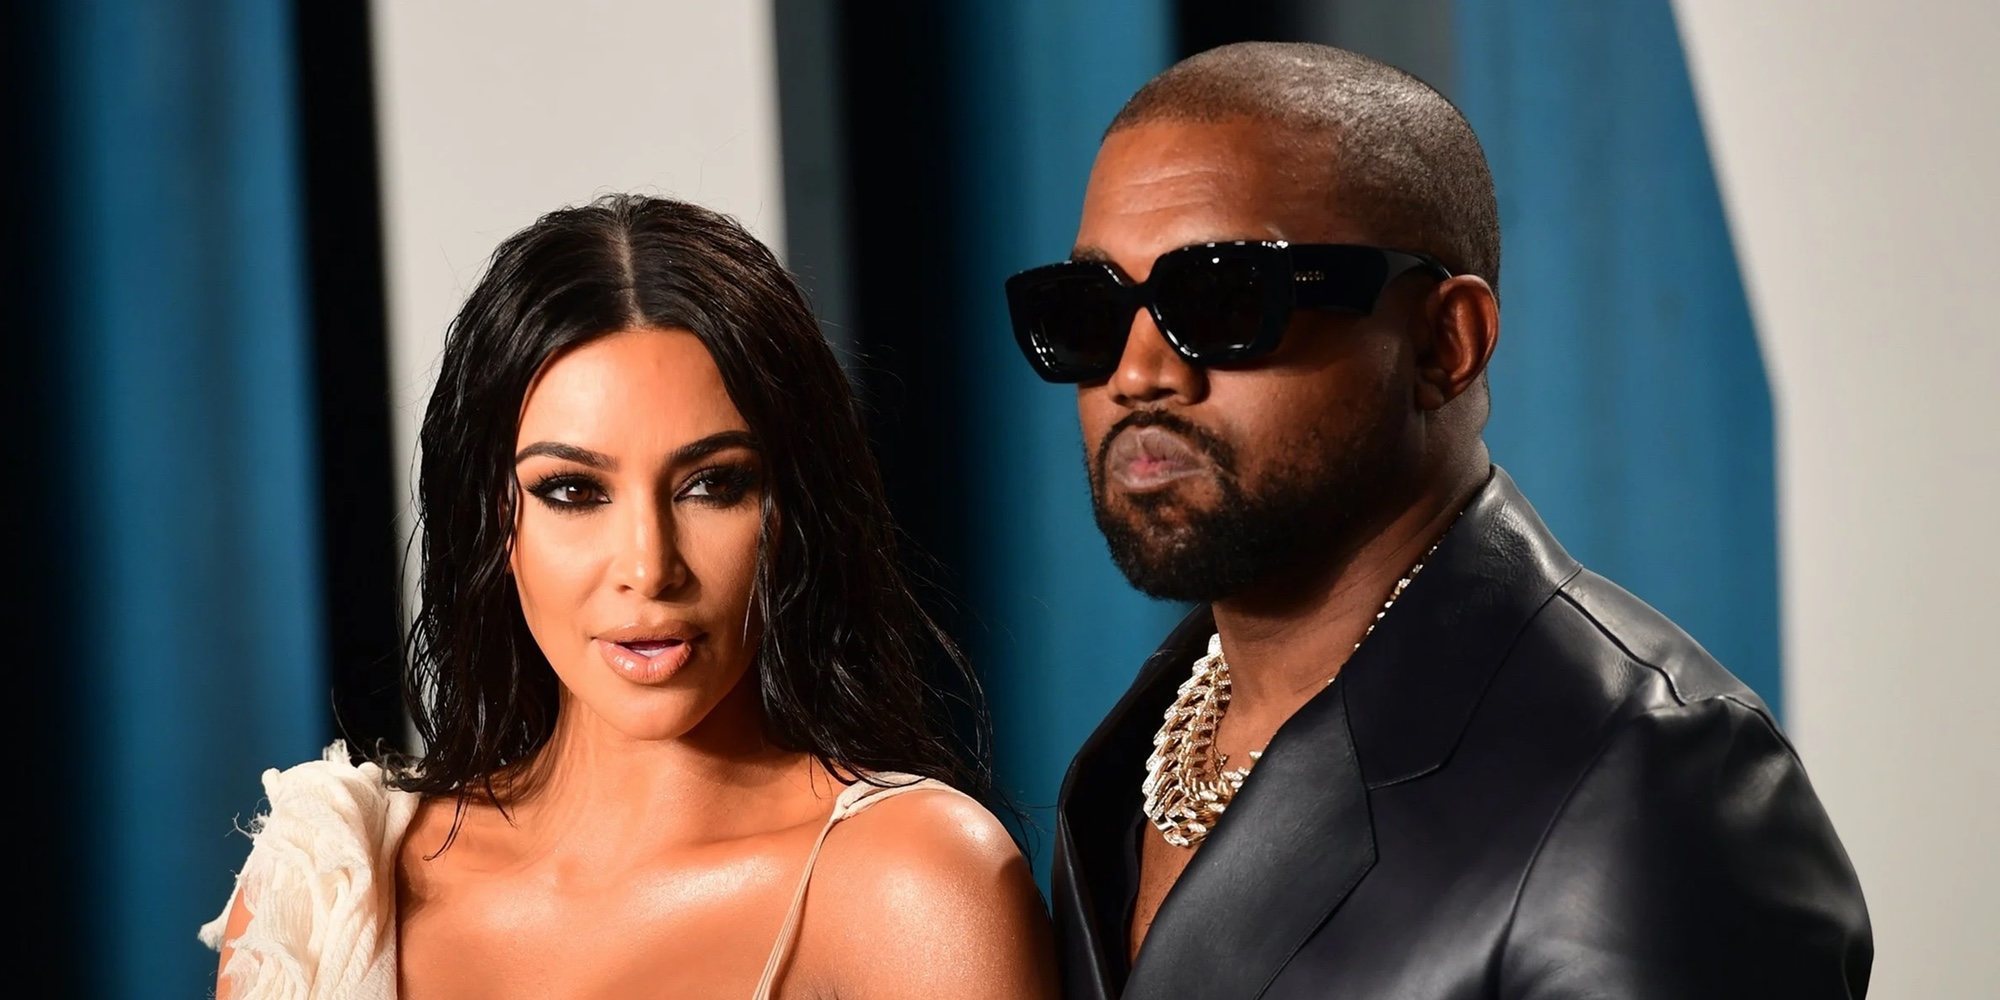 Kim Kardashian pide el divorcio a Kanye West: "Para ella todo ha terminado y sucederá lo inevitable"